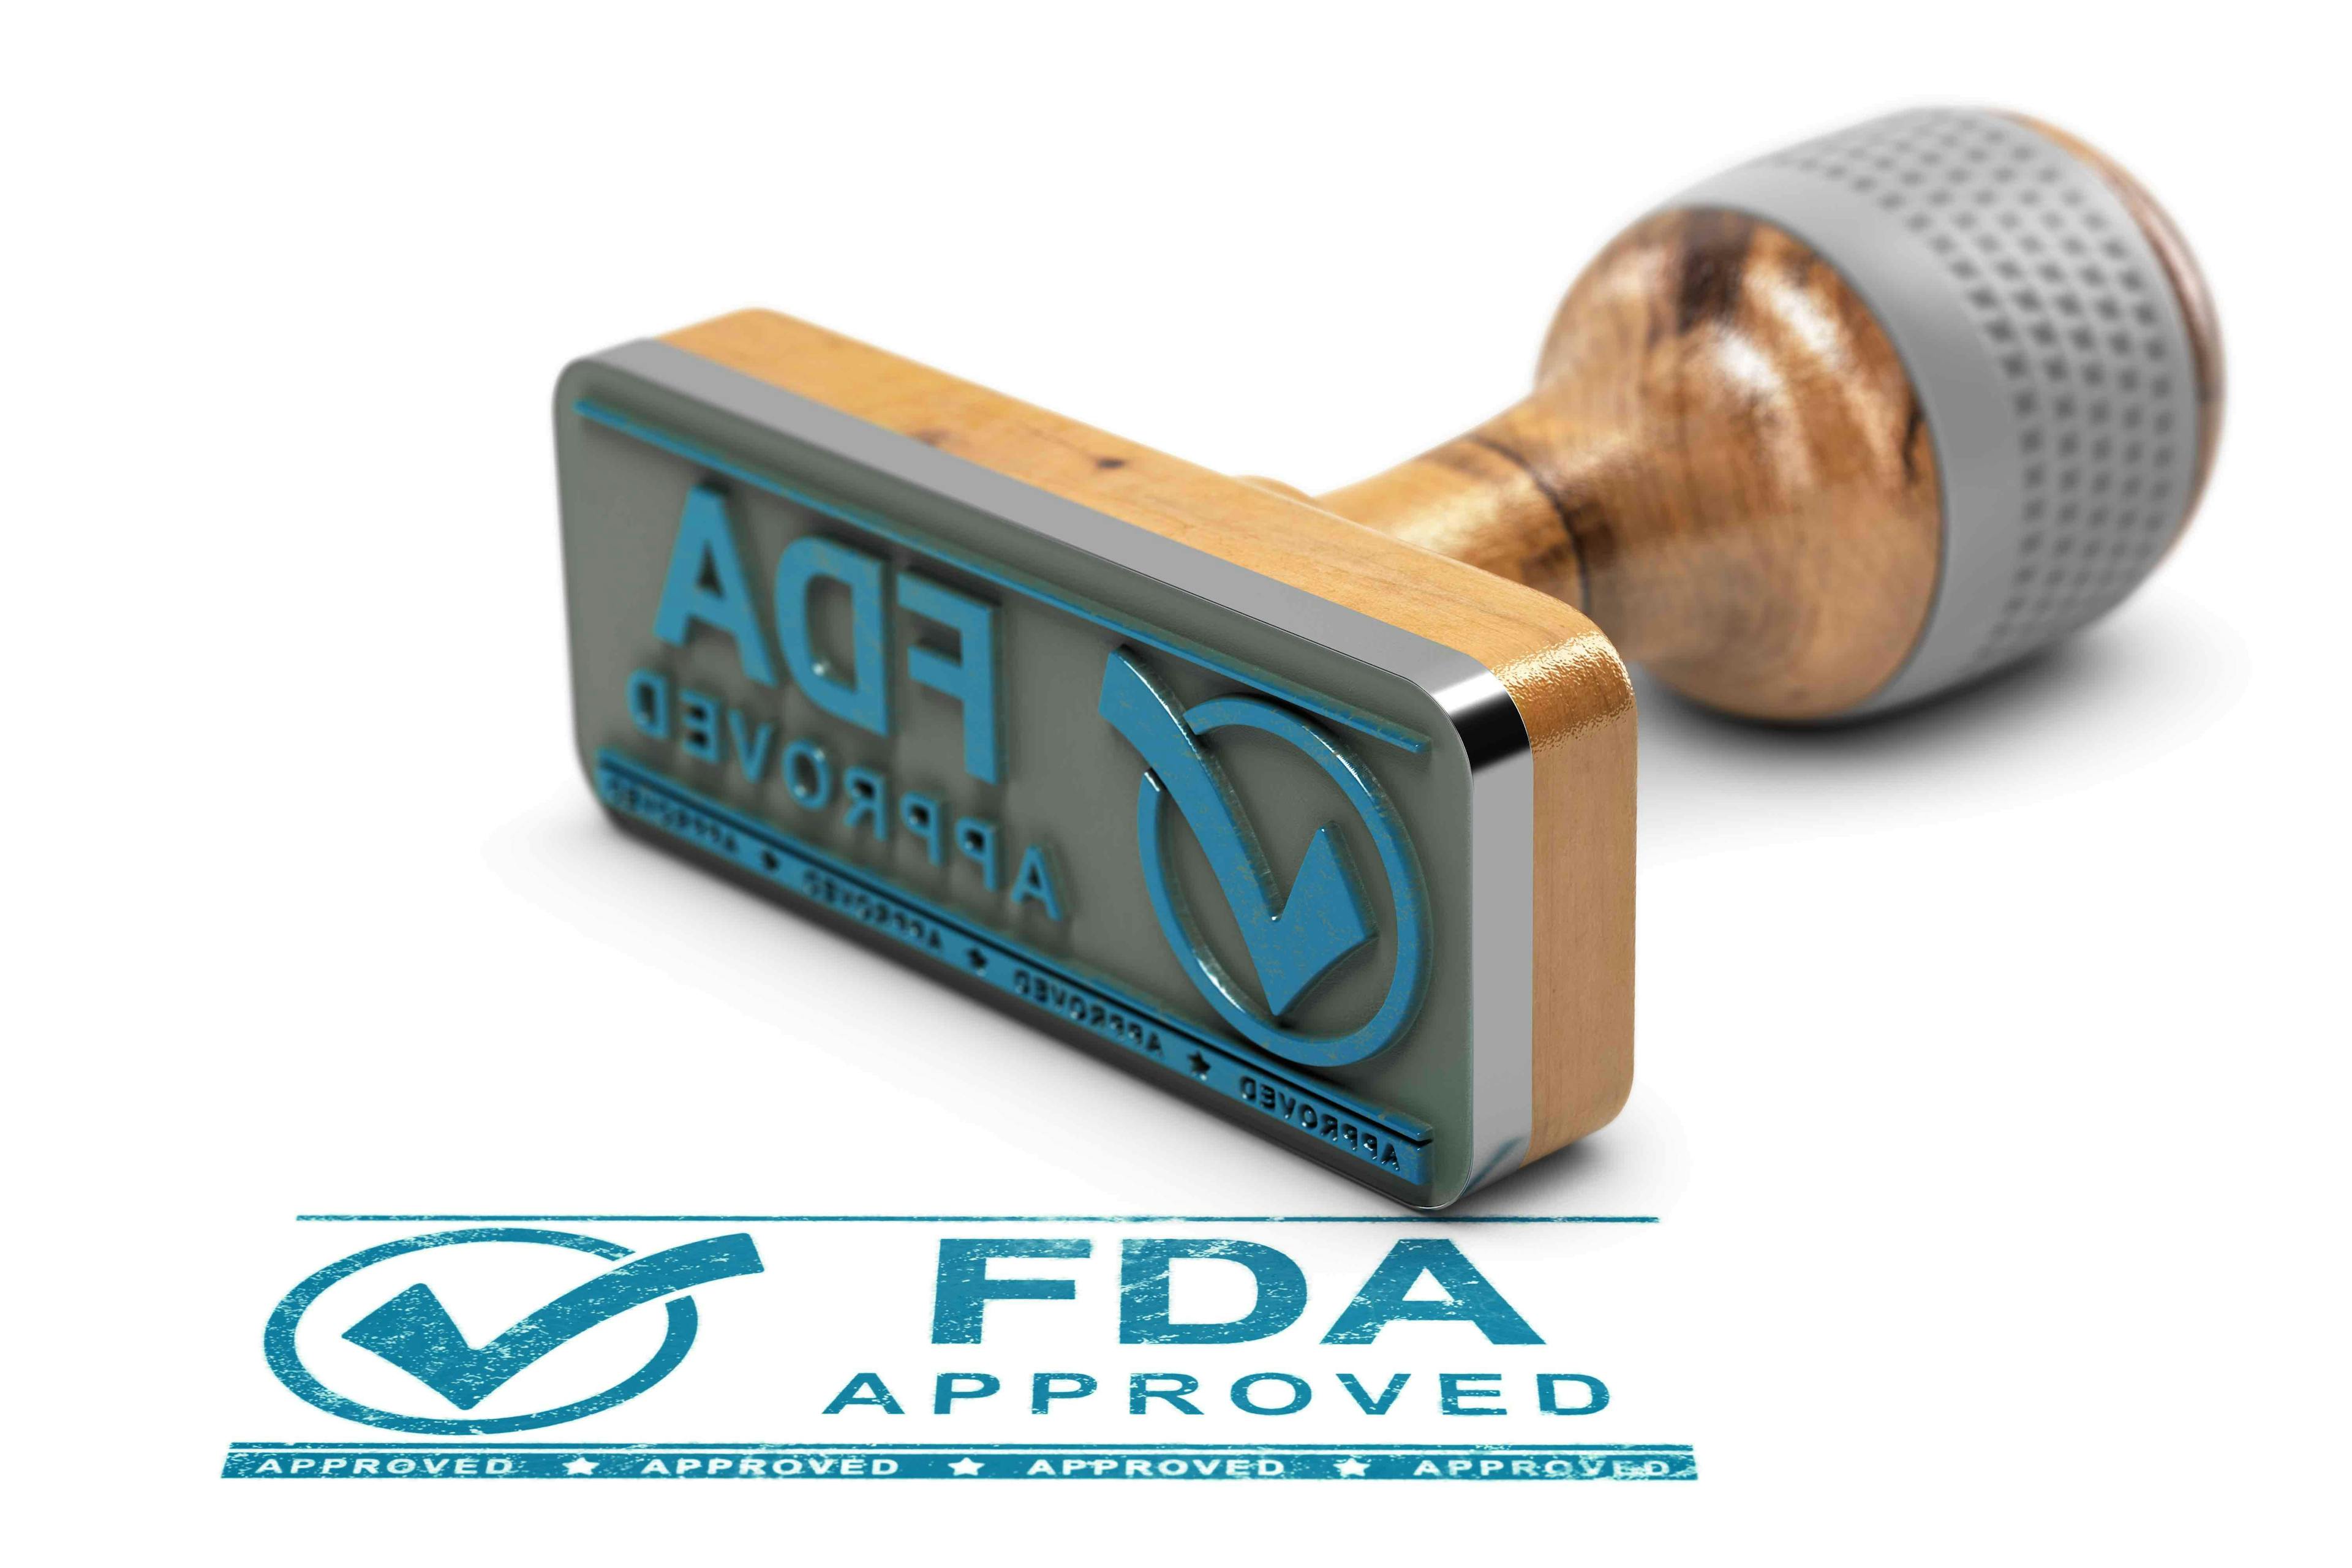 Blue FDA approved stamp